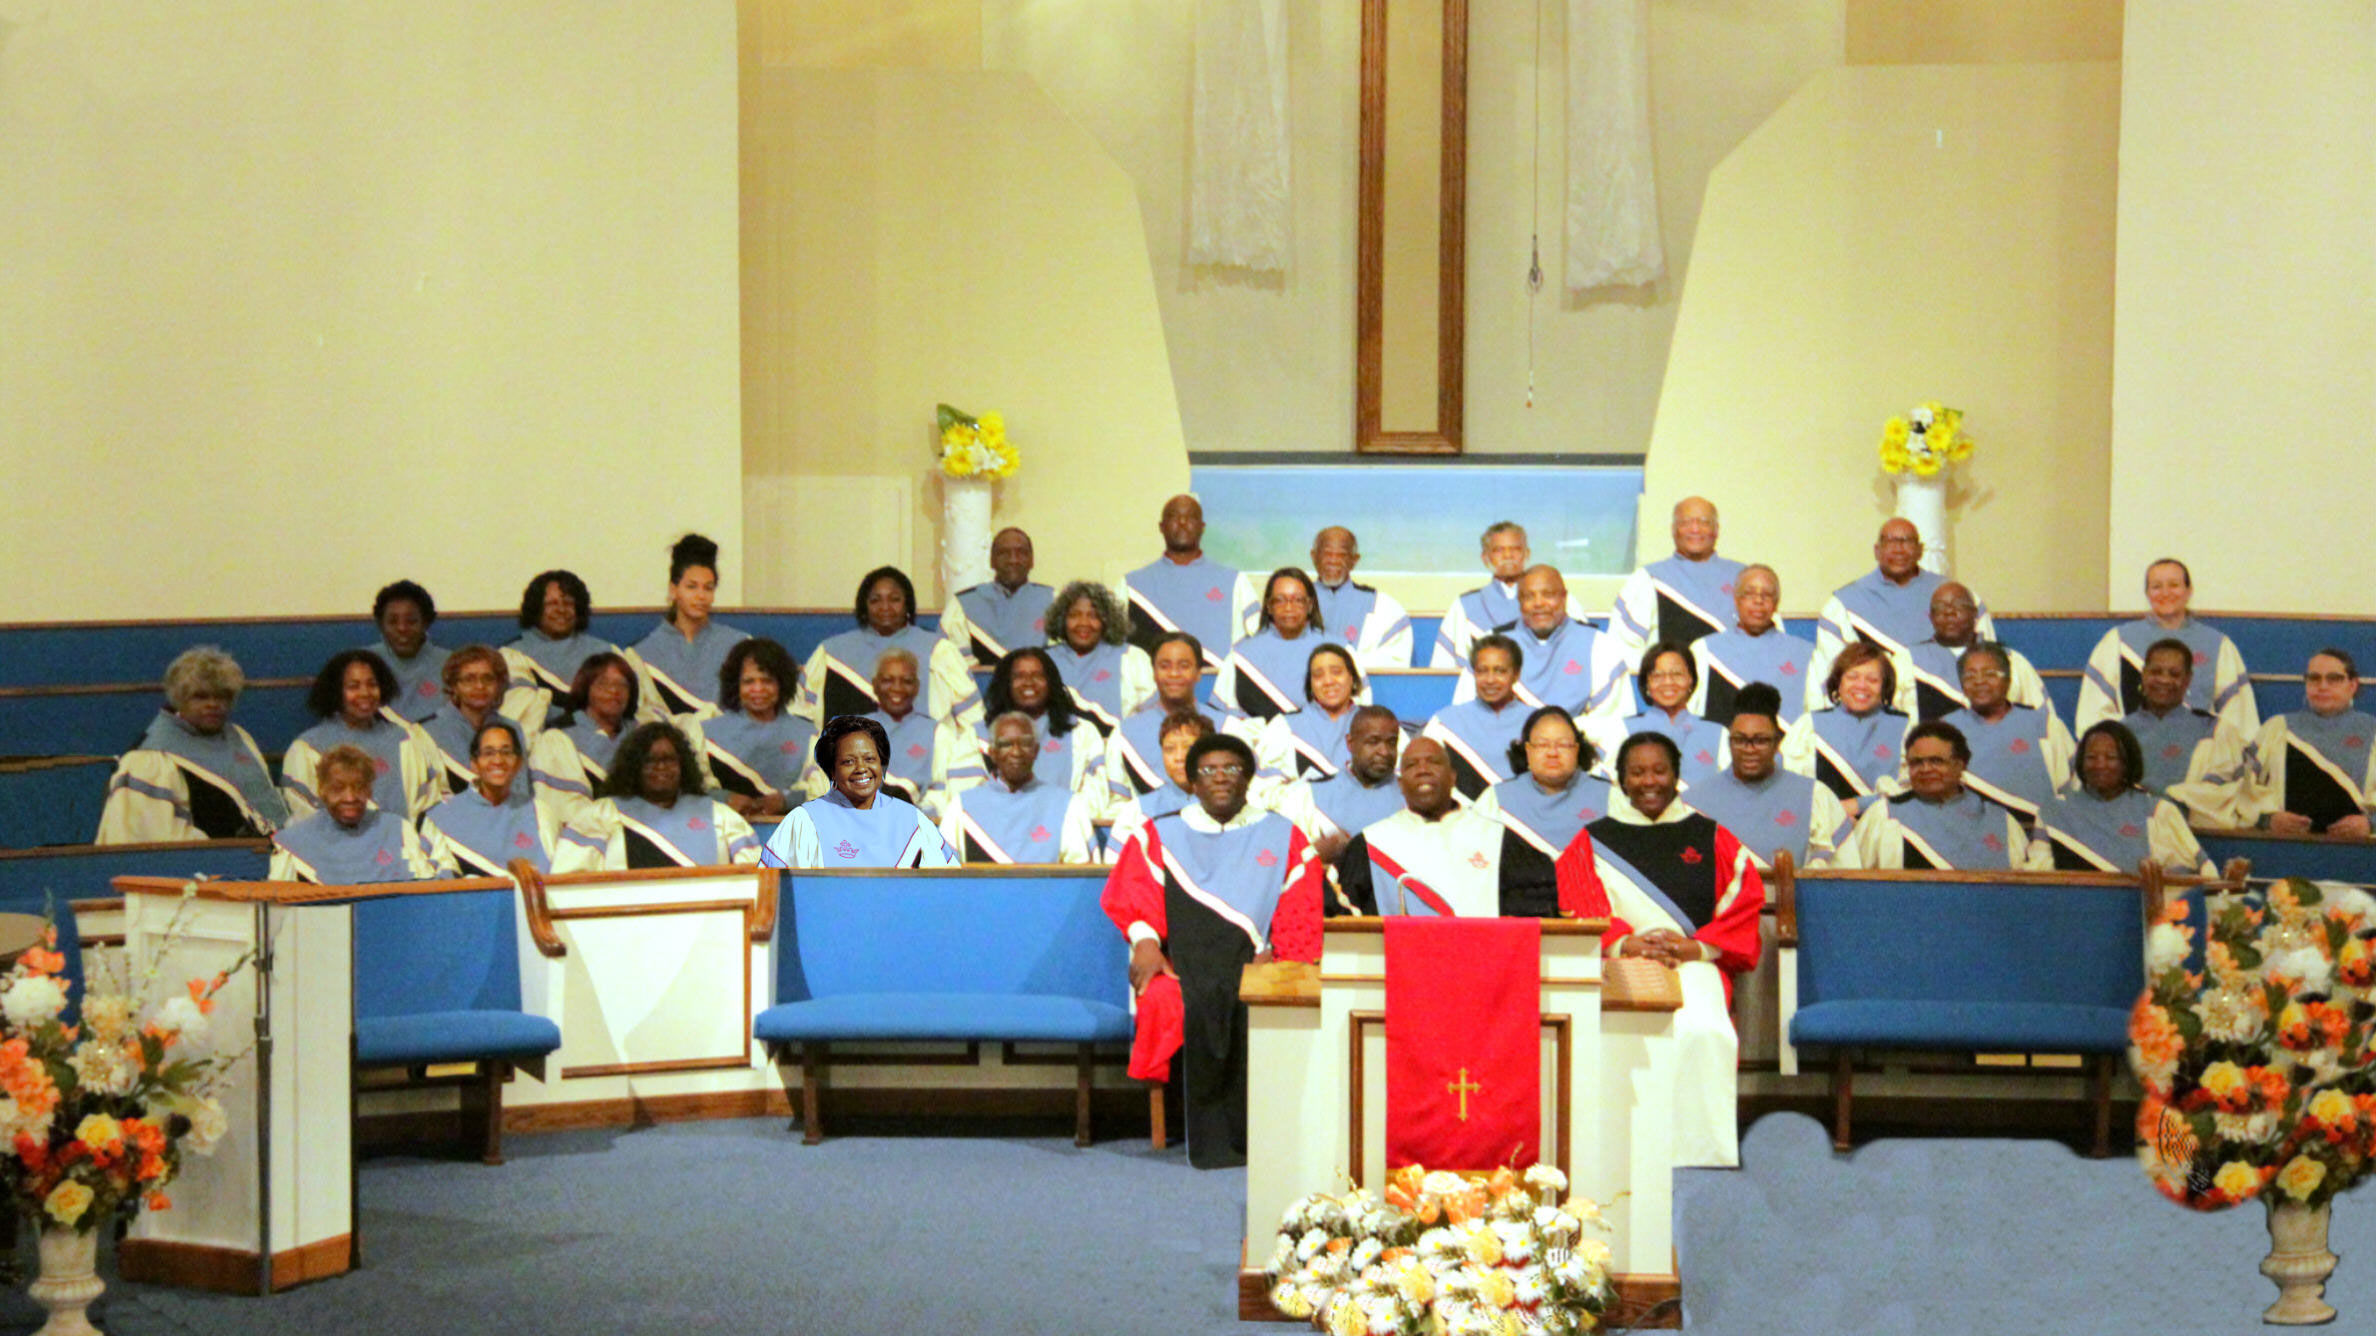 Palma Ceia Mass Choir